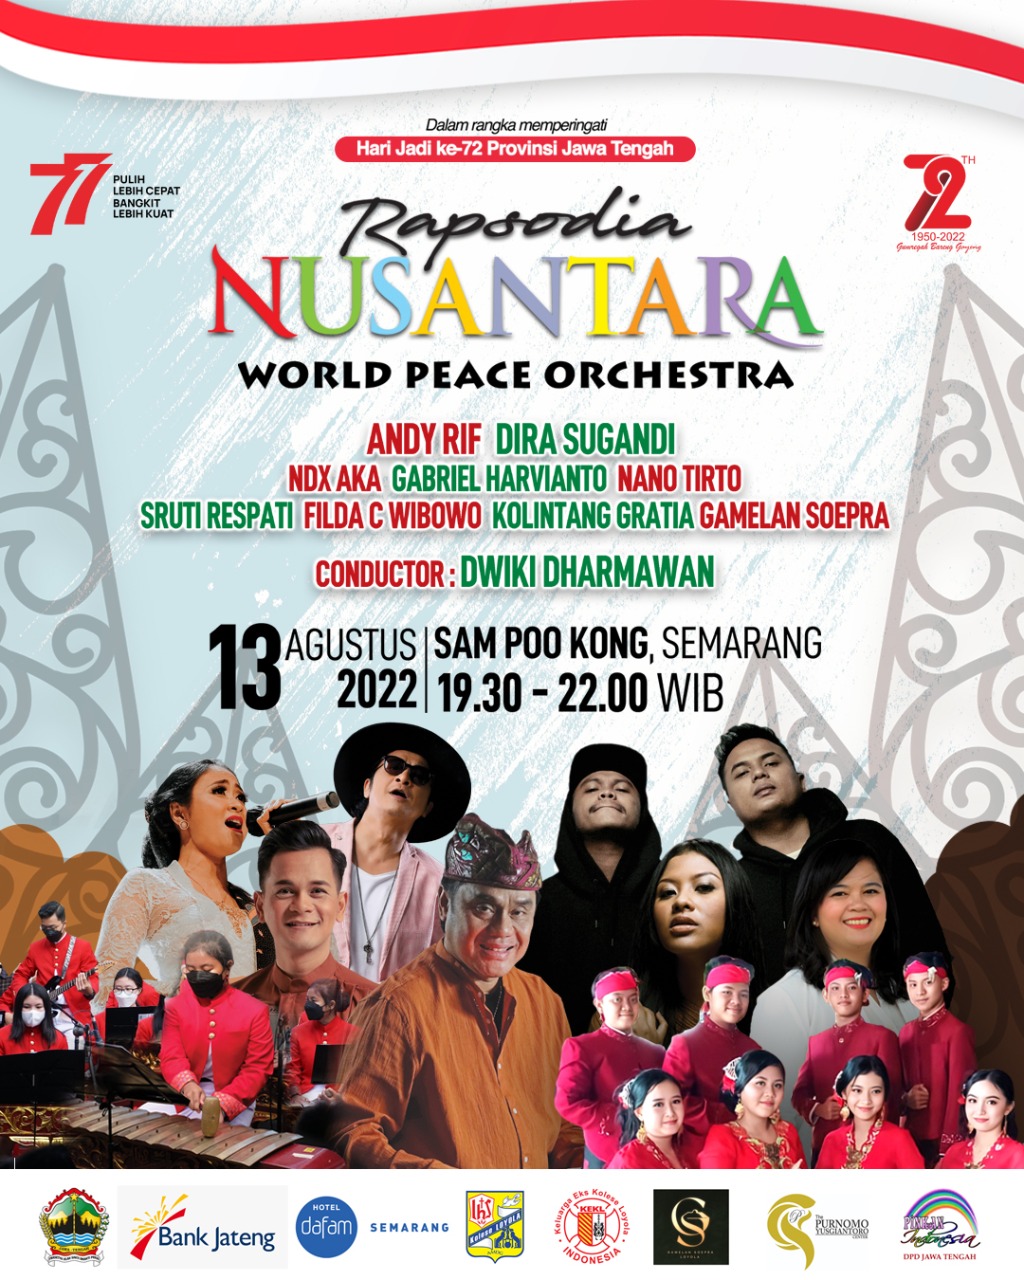 Hari Jadi Ke-72 Jateng, Ganjar Gelar Konser Rapsodia Nusantara Di Sampookong